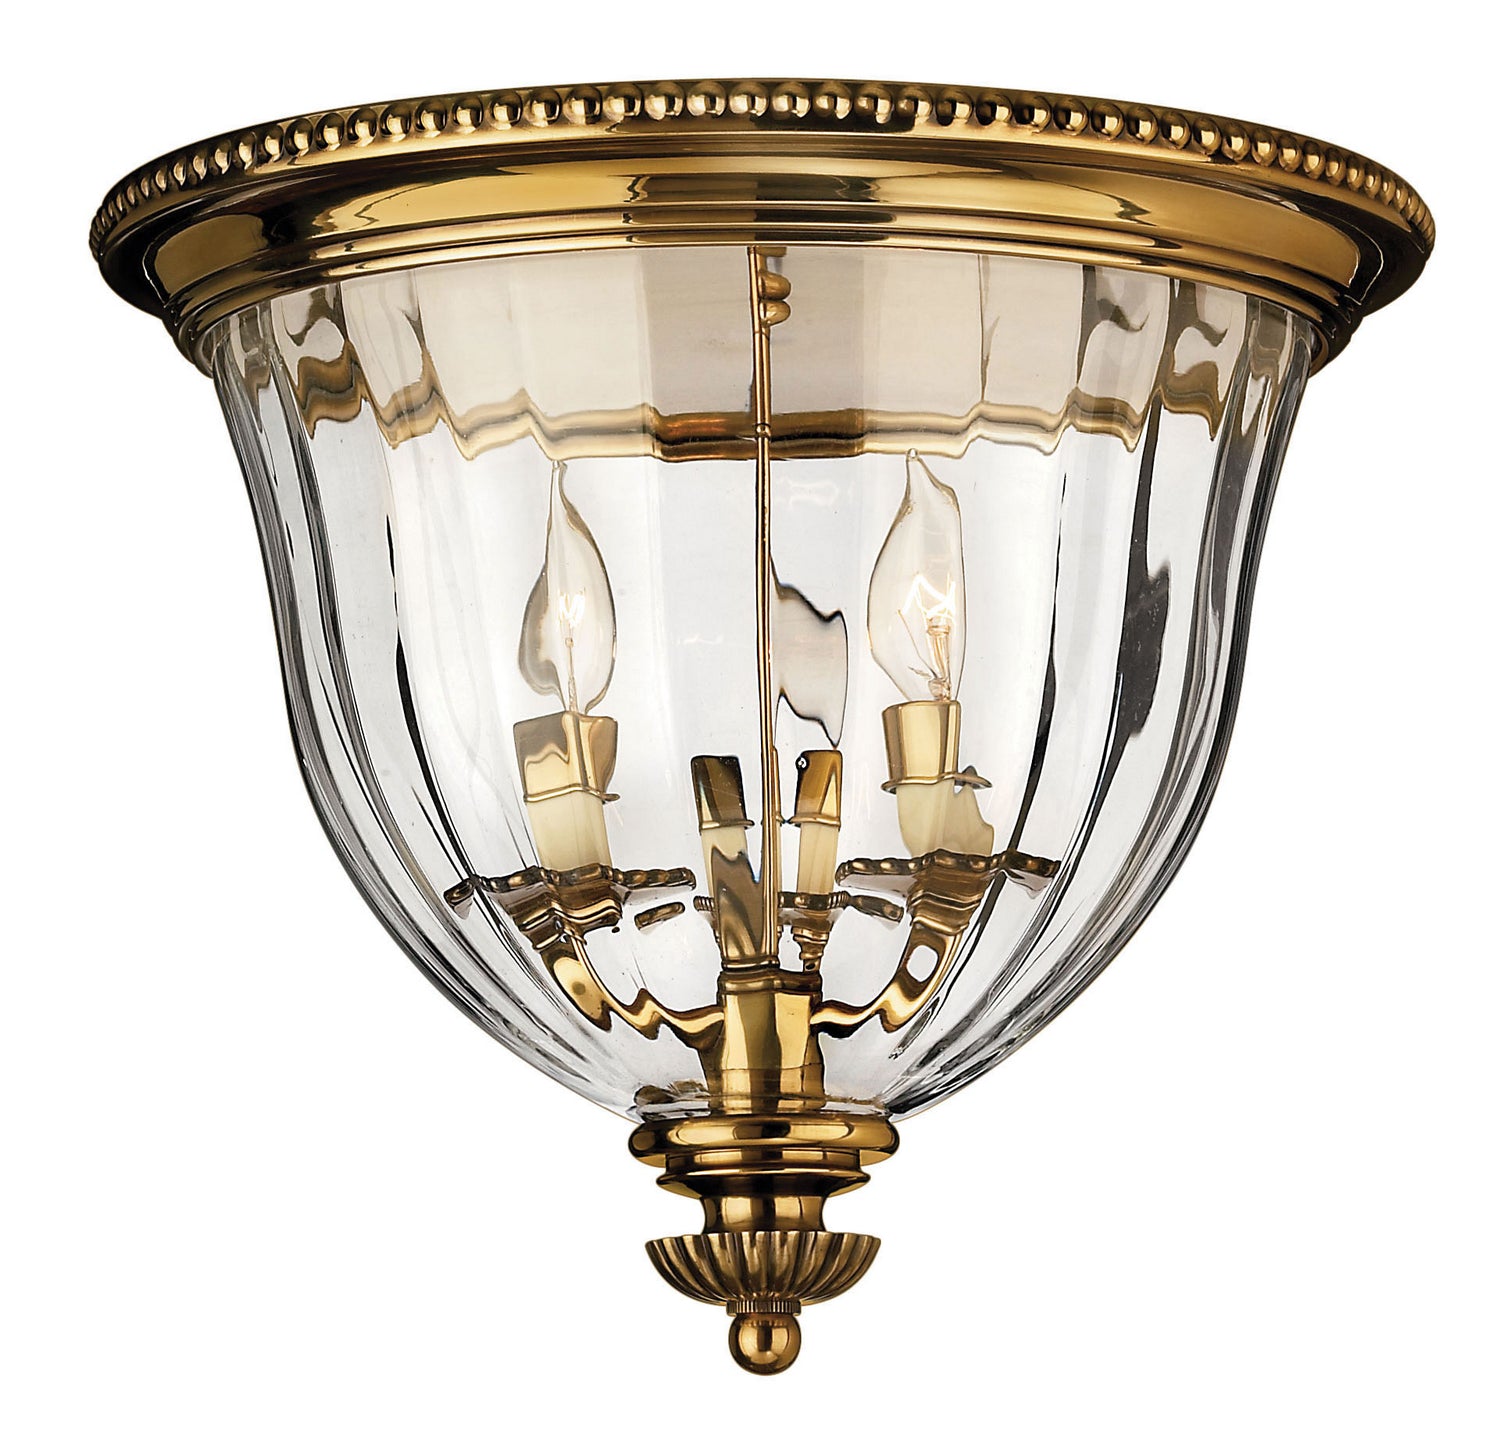 Hinkley Canada - LED Flush Mount - Cambridge - Burnished Brass- Union Lighting Luminaires Decor